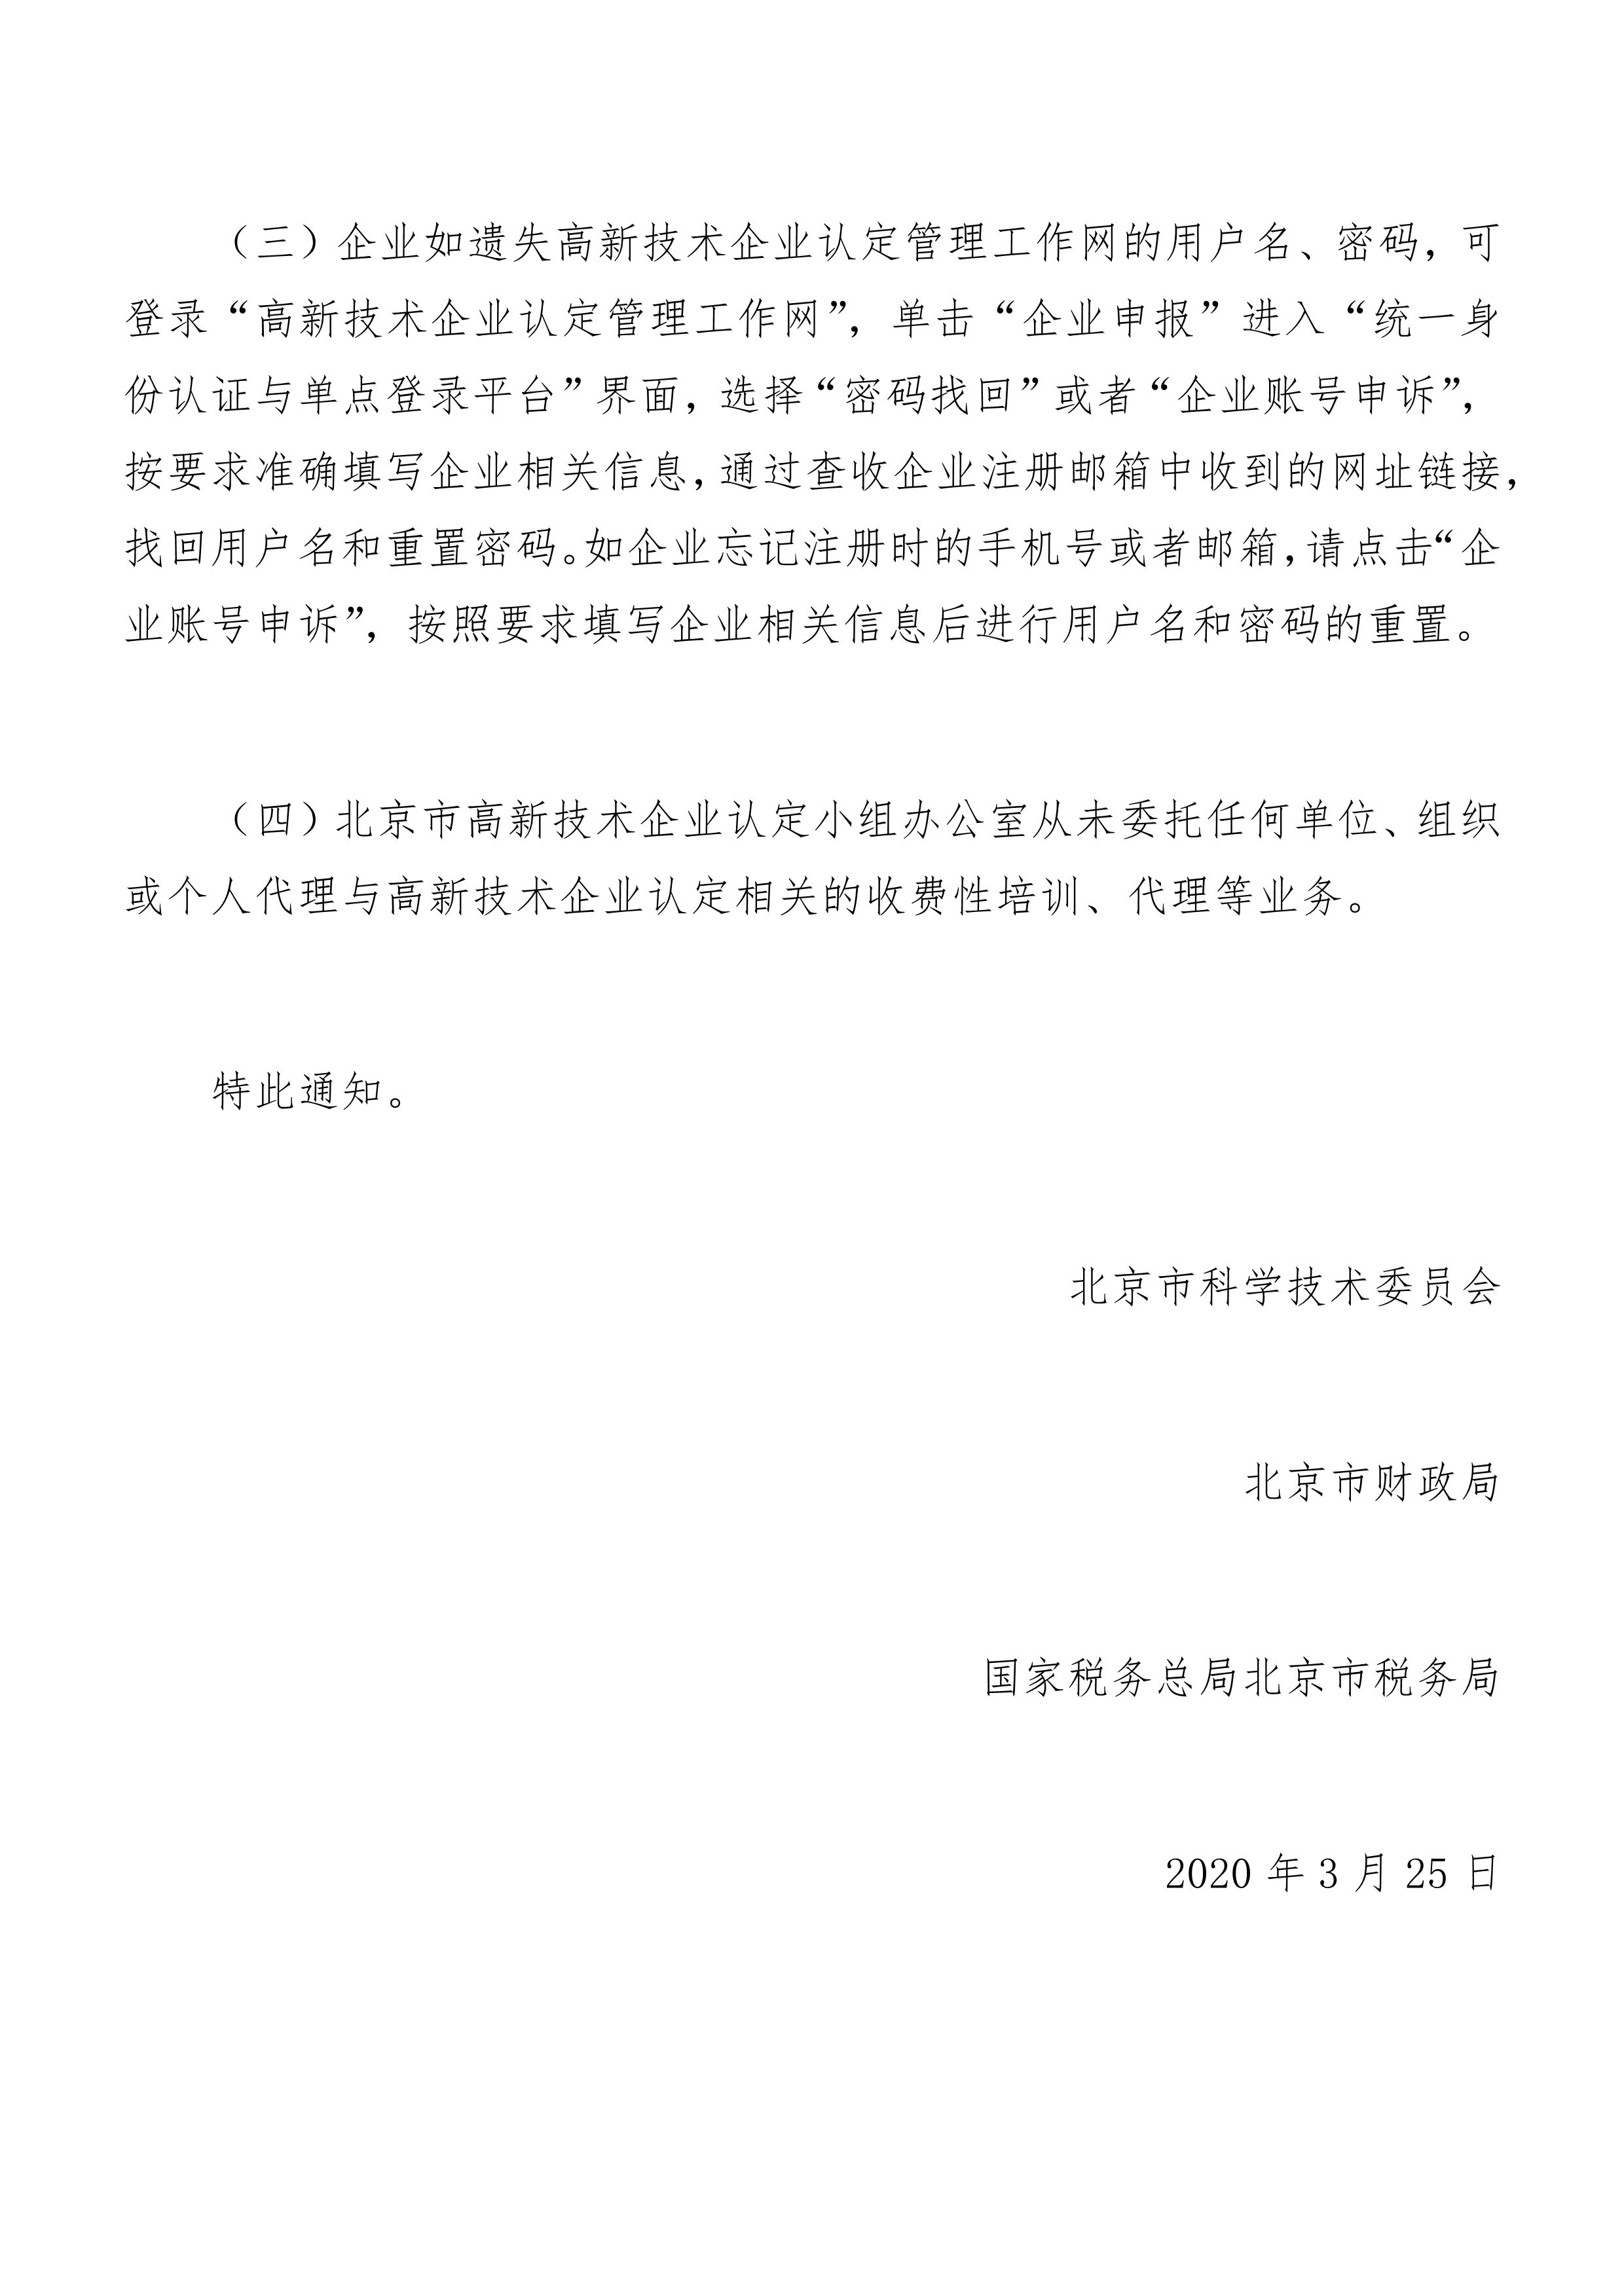 关于启动2020年度北京市高新技术企业认定管理工作的通知_4.jpg